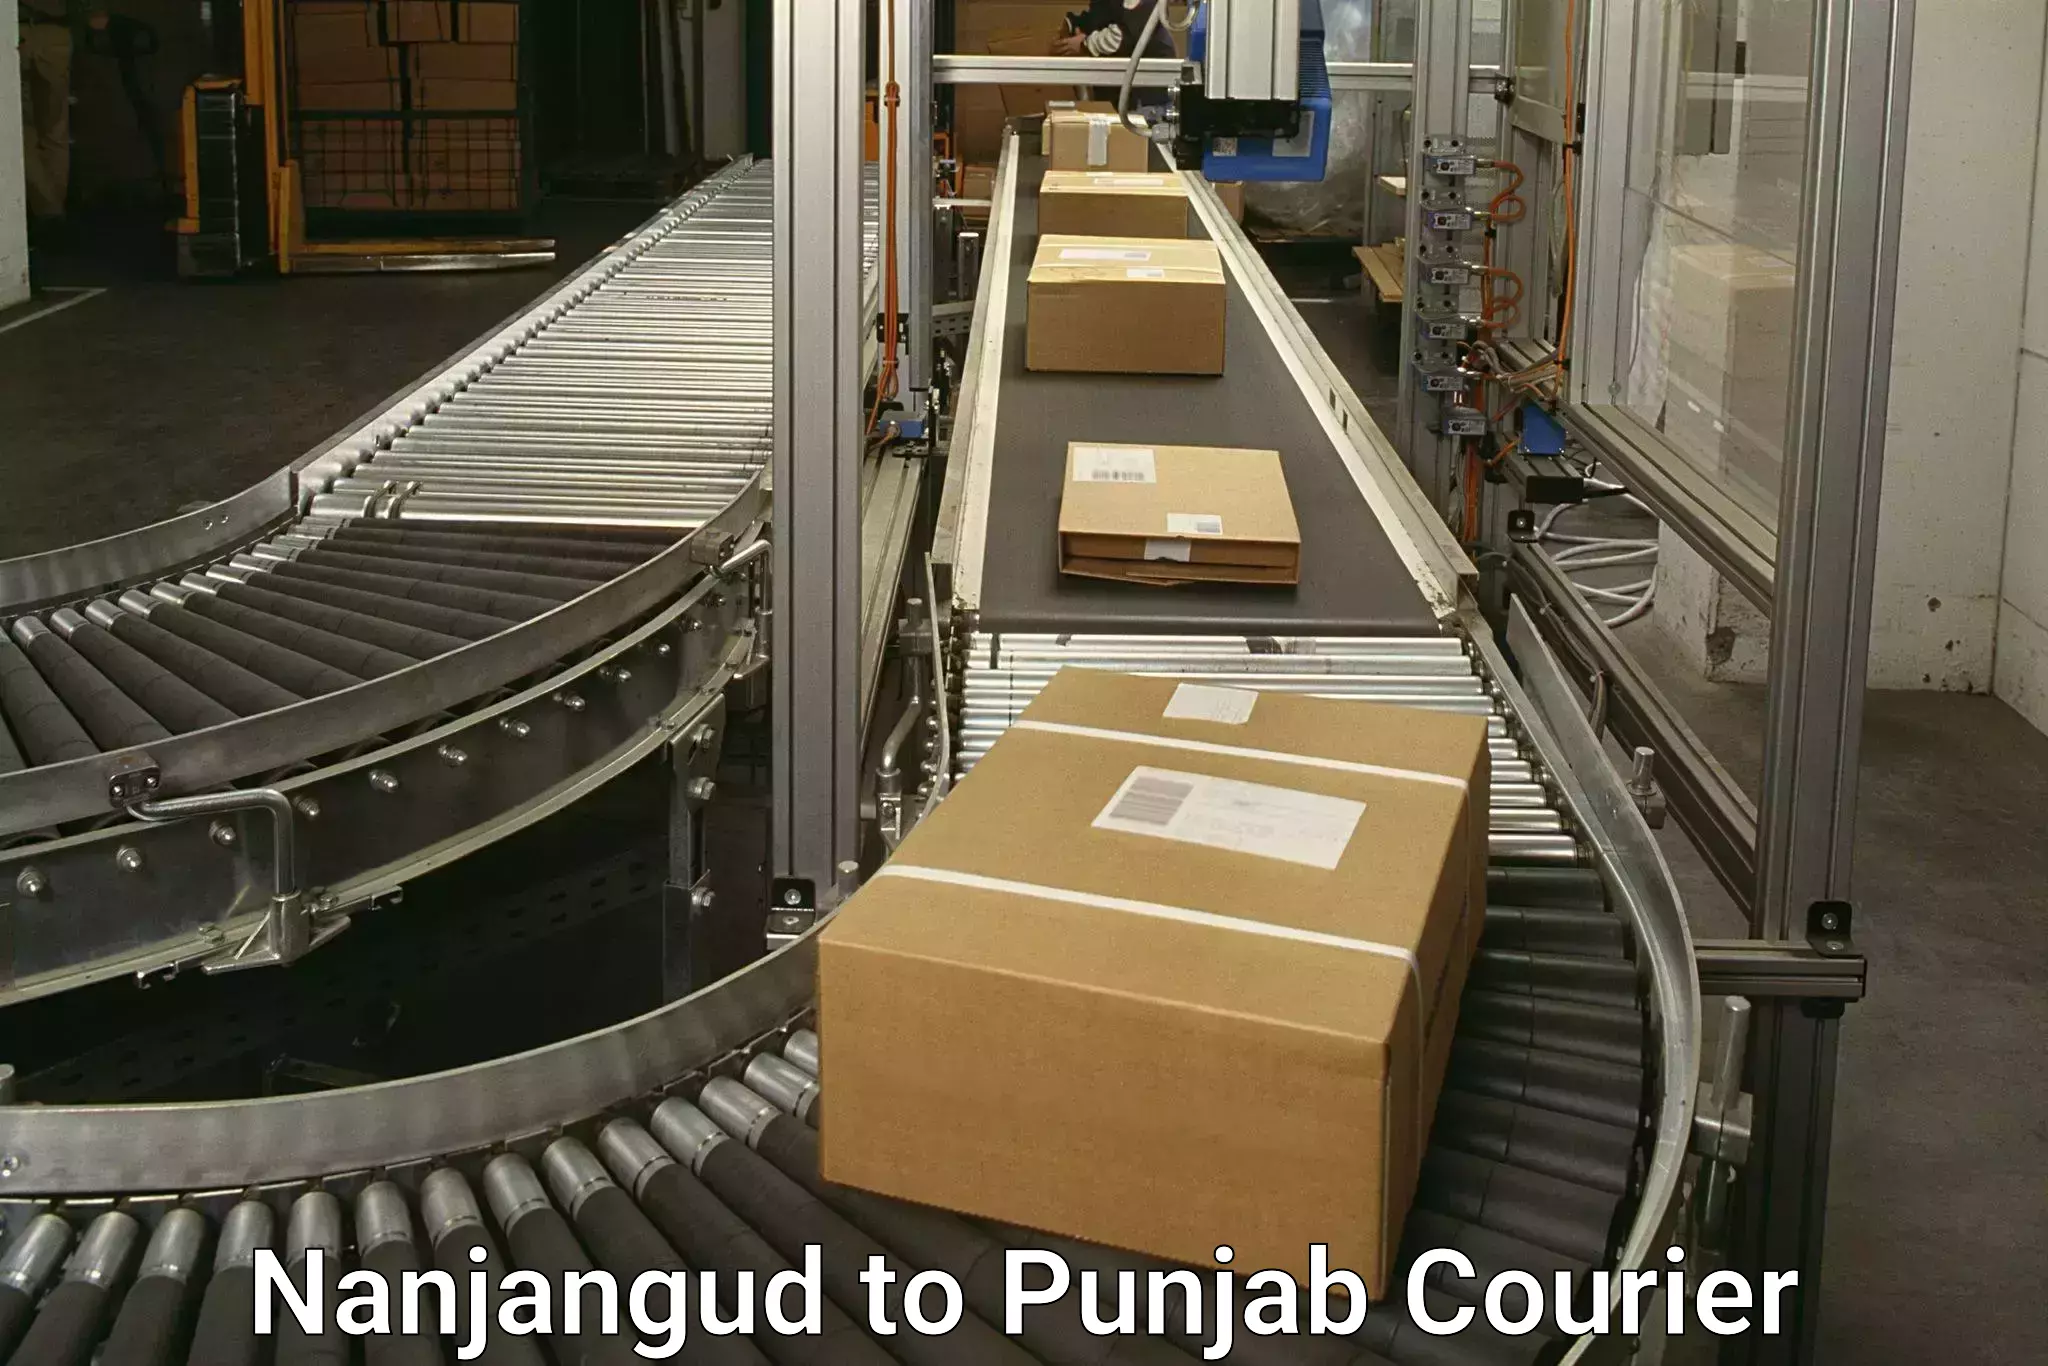 Professional courier handling Nanjangud to Jalandhar